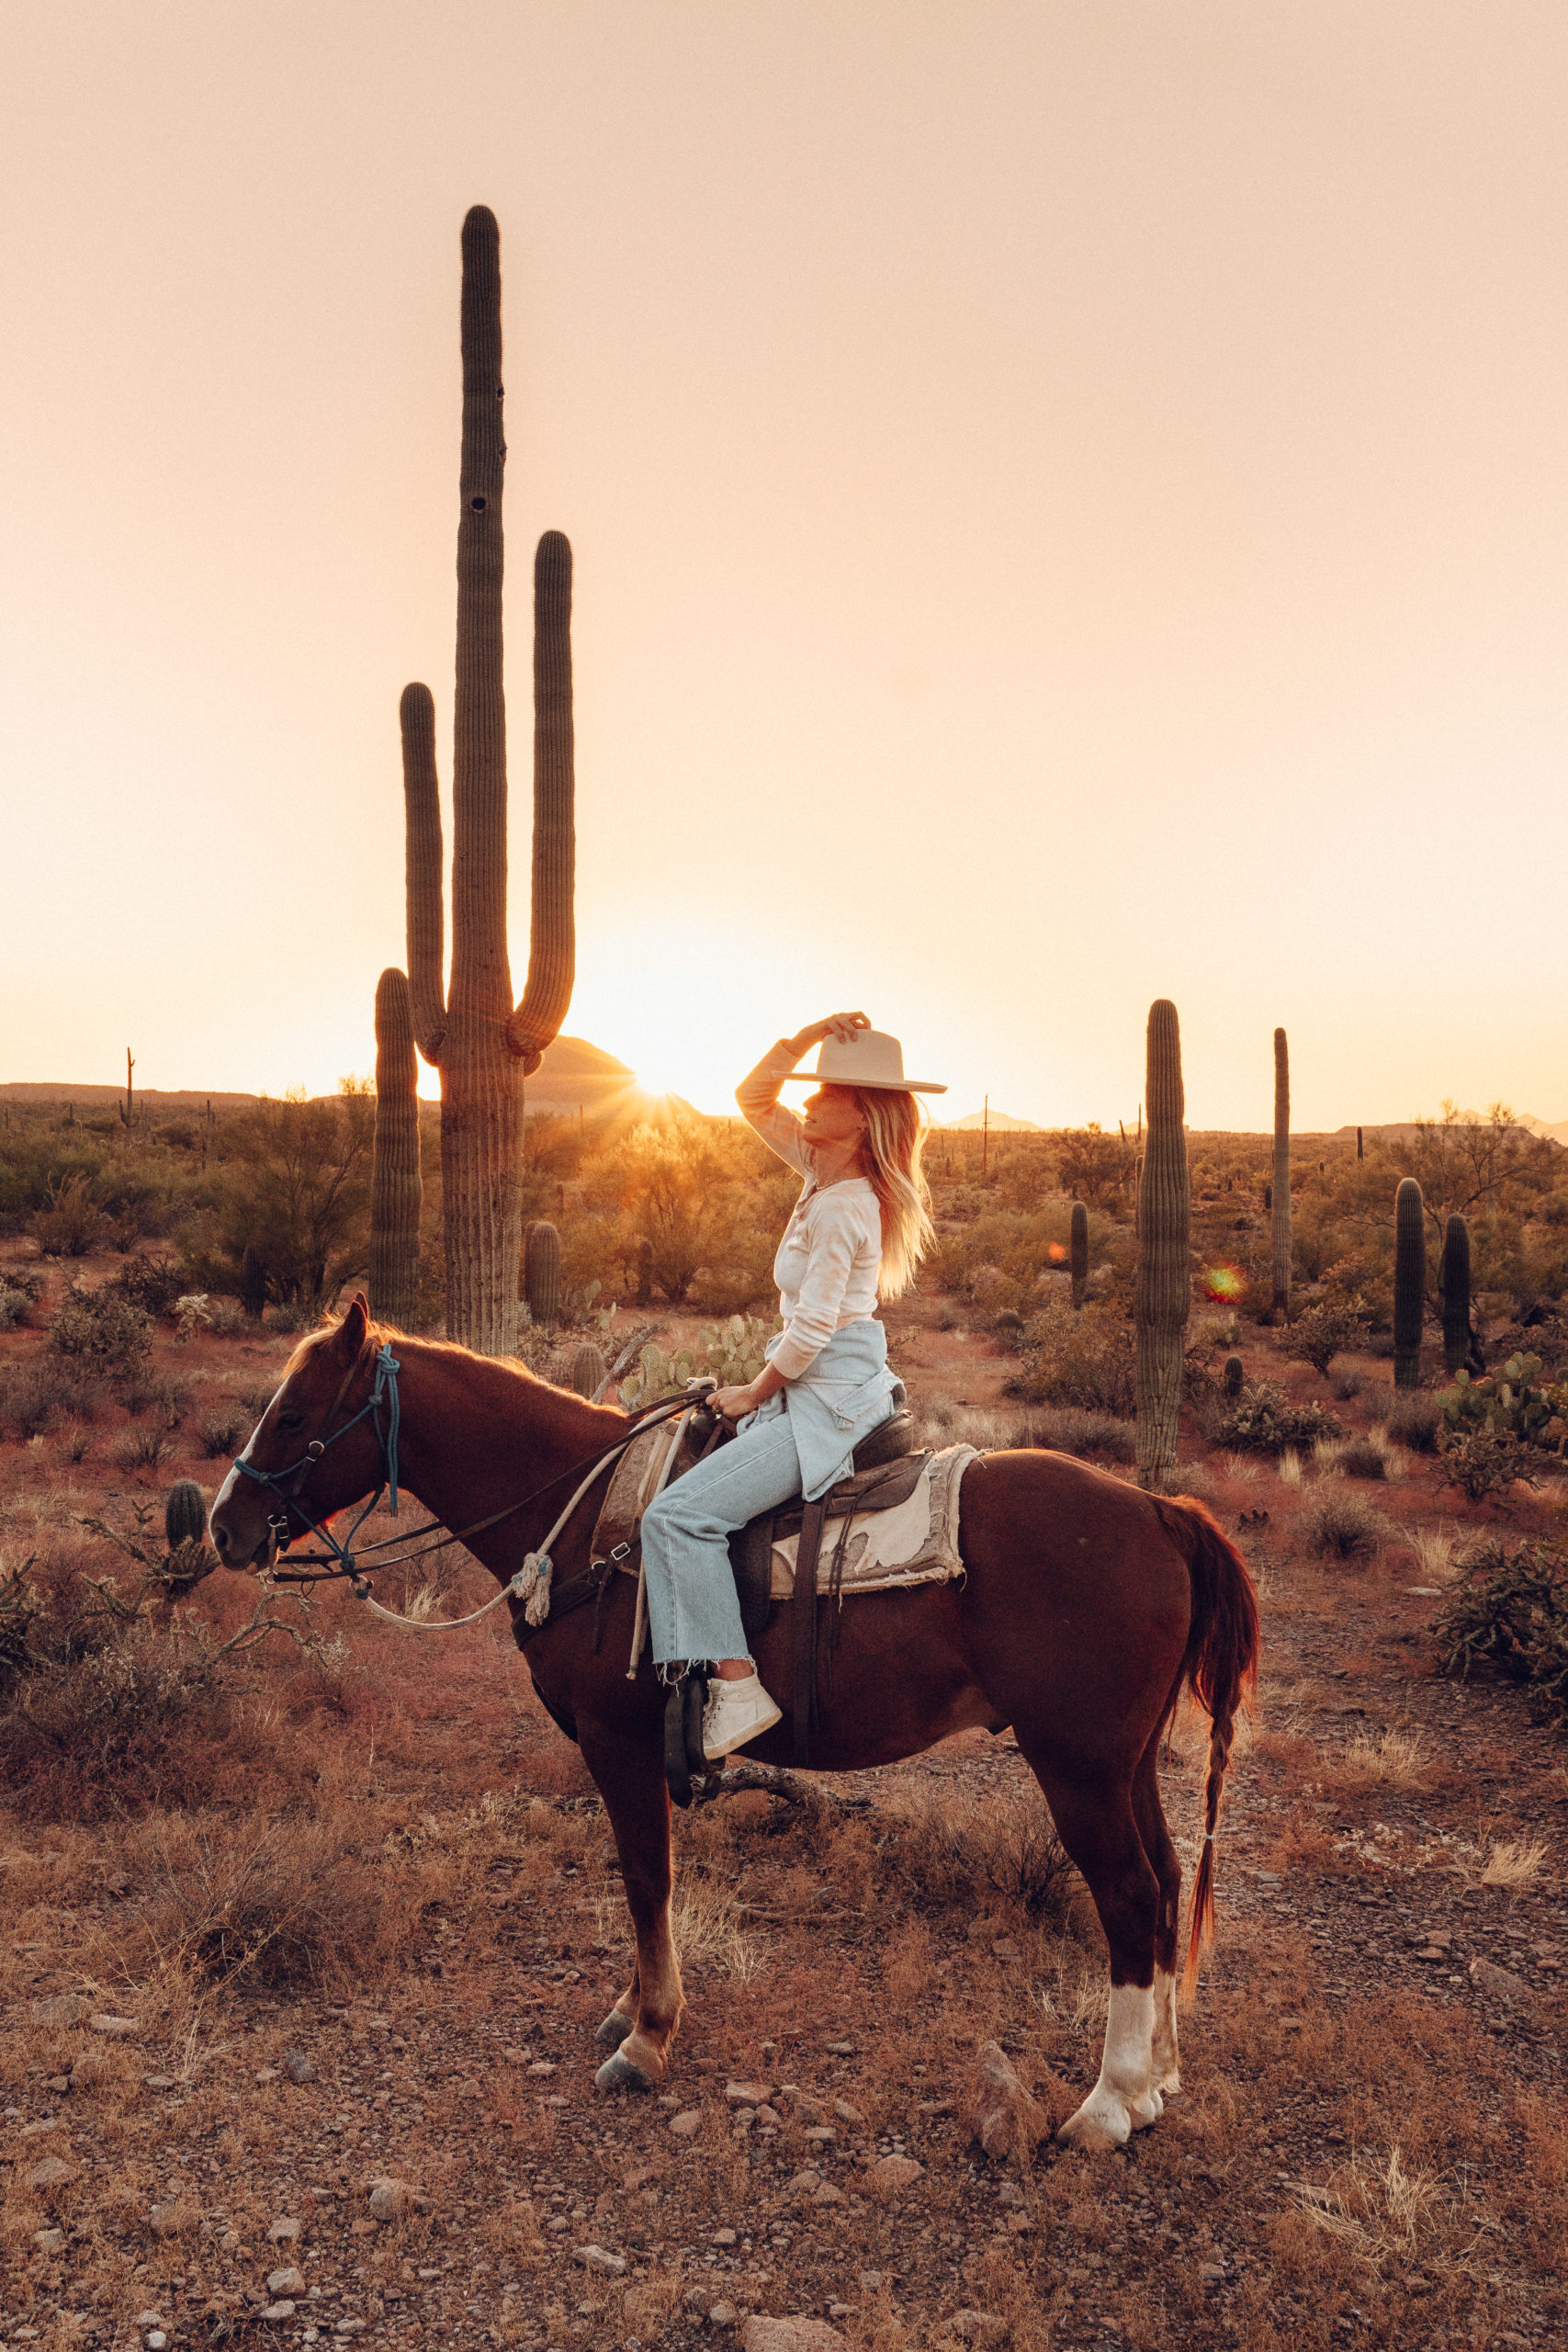 Sarah horse riding at sunset in Saguaro National Park